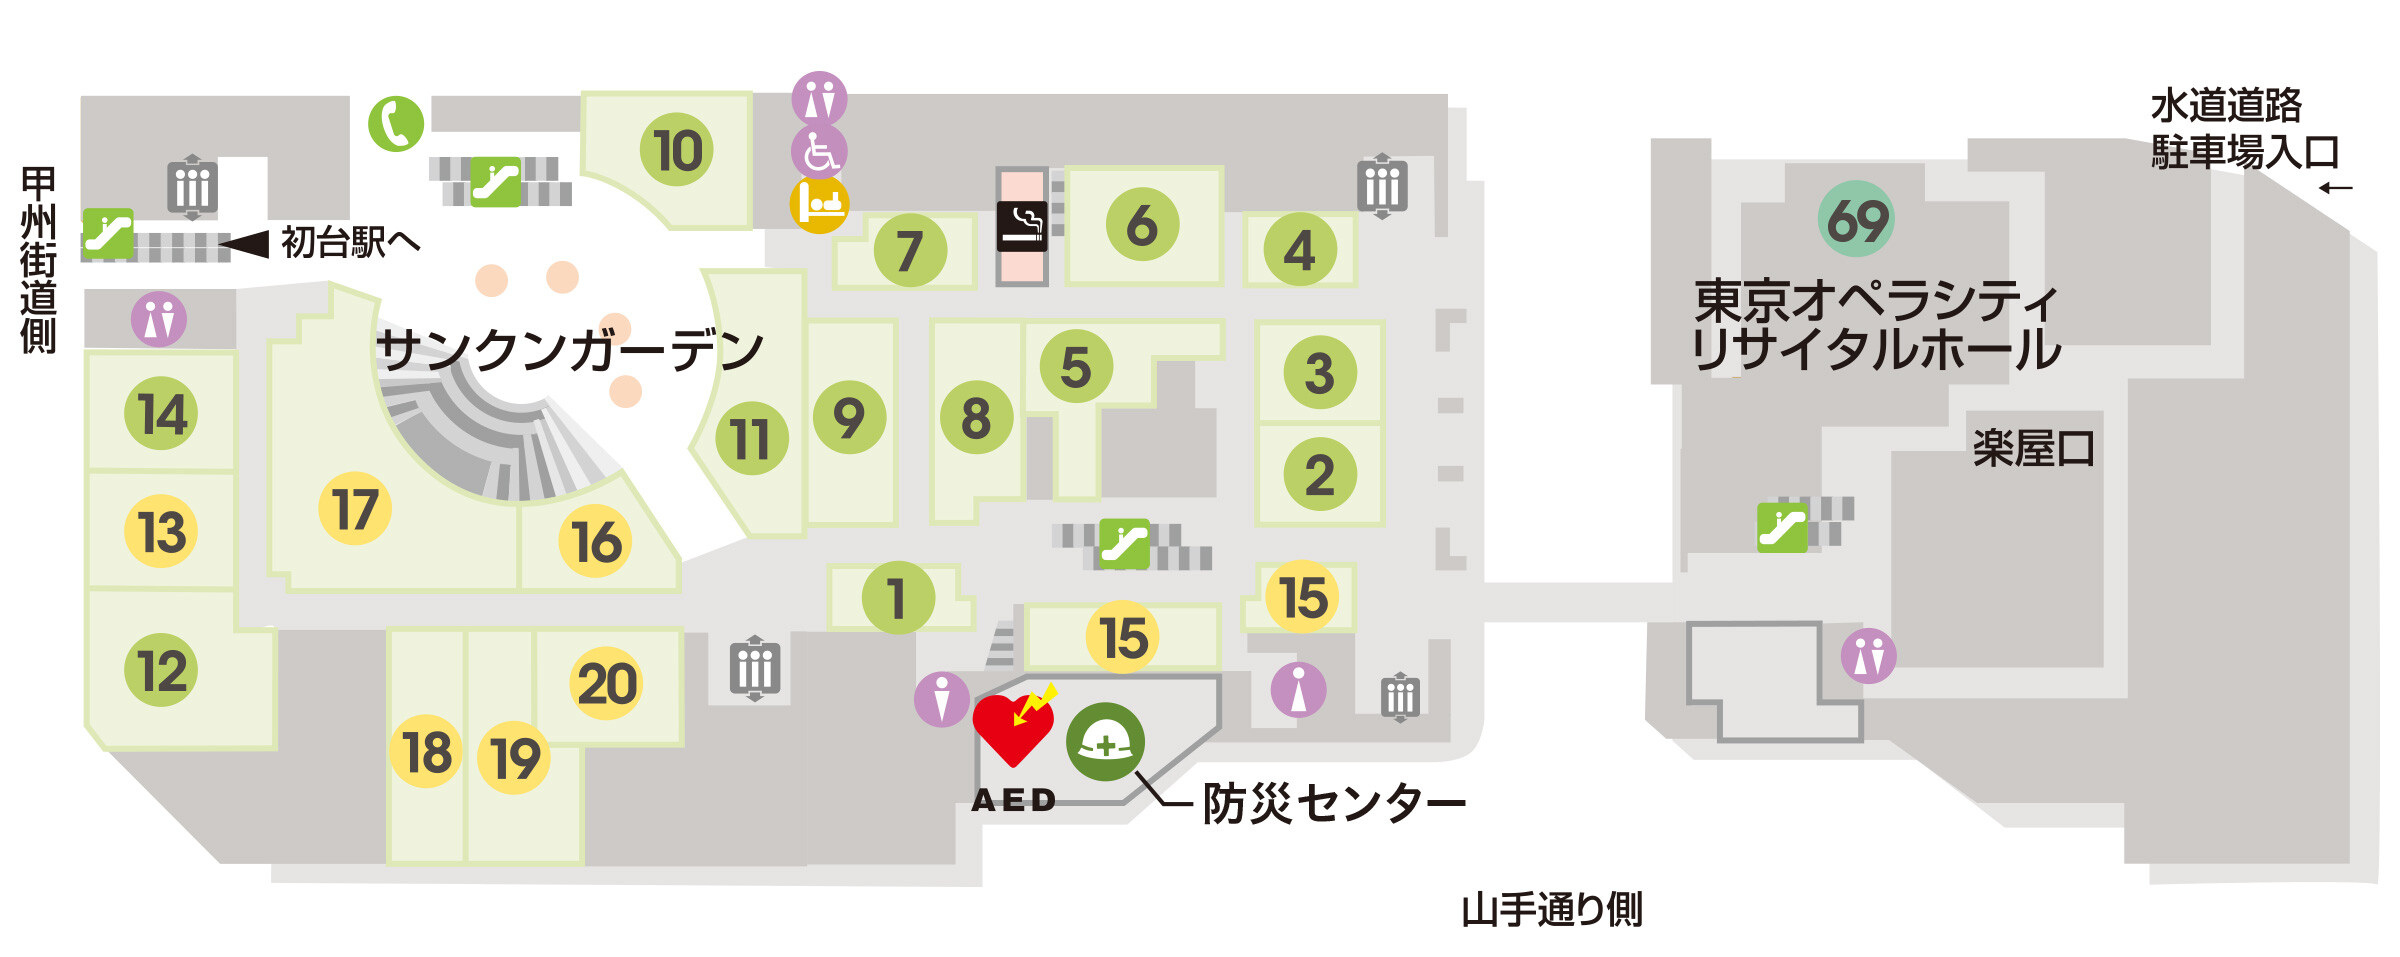 東京オペラシティB1Fフロアマップ